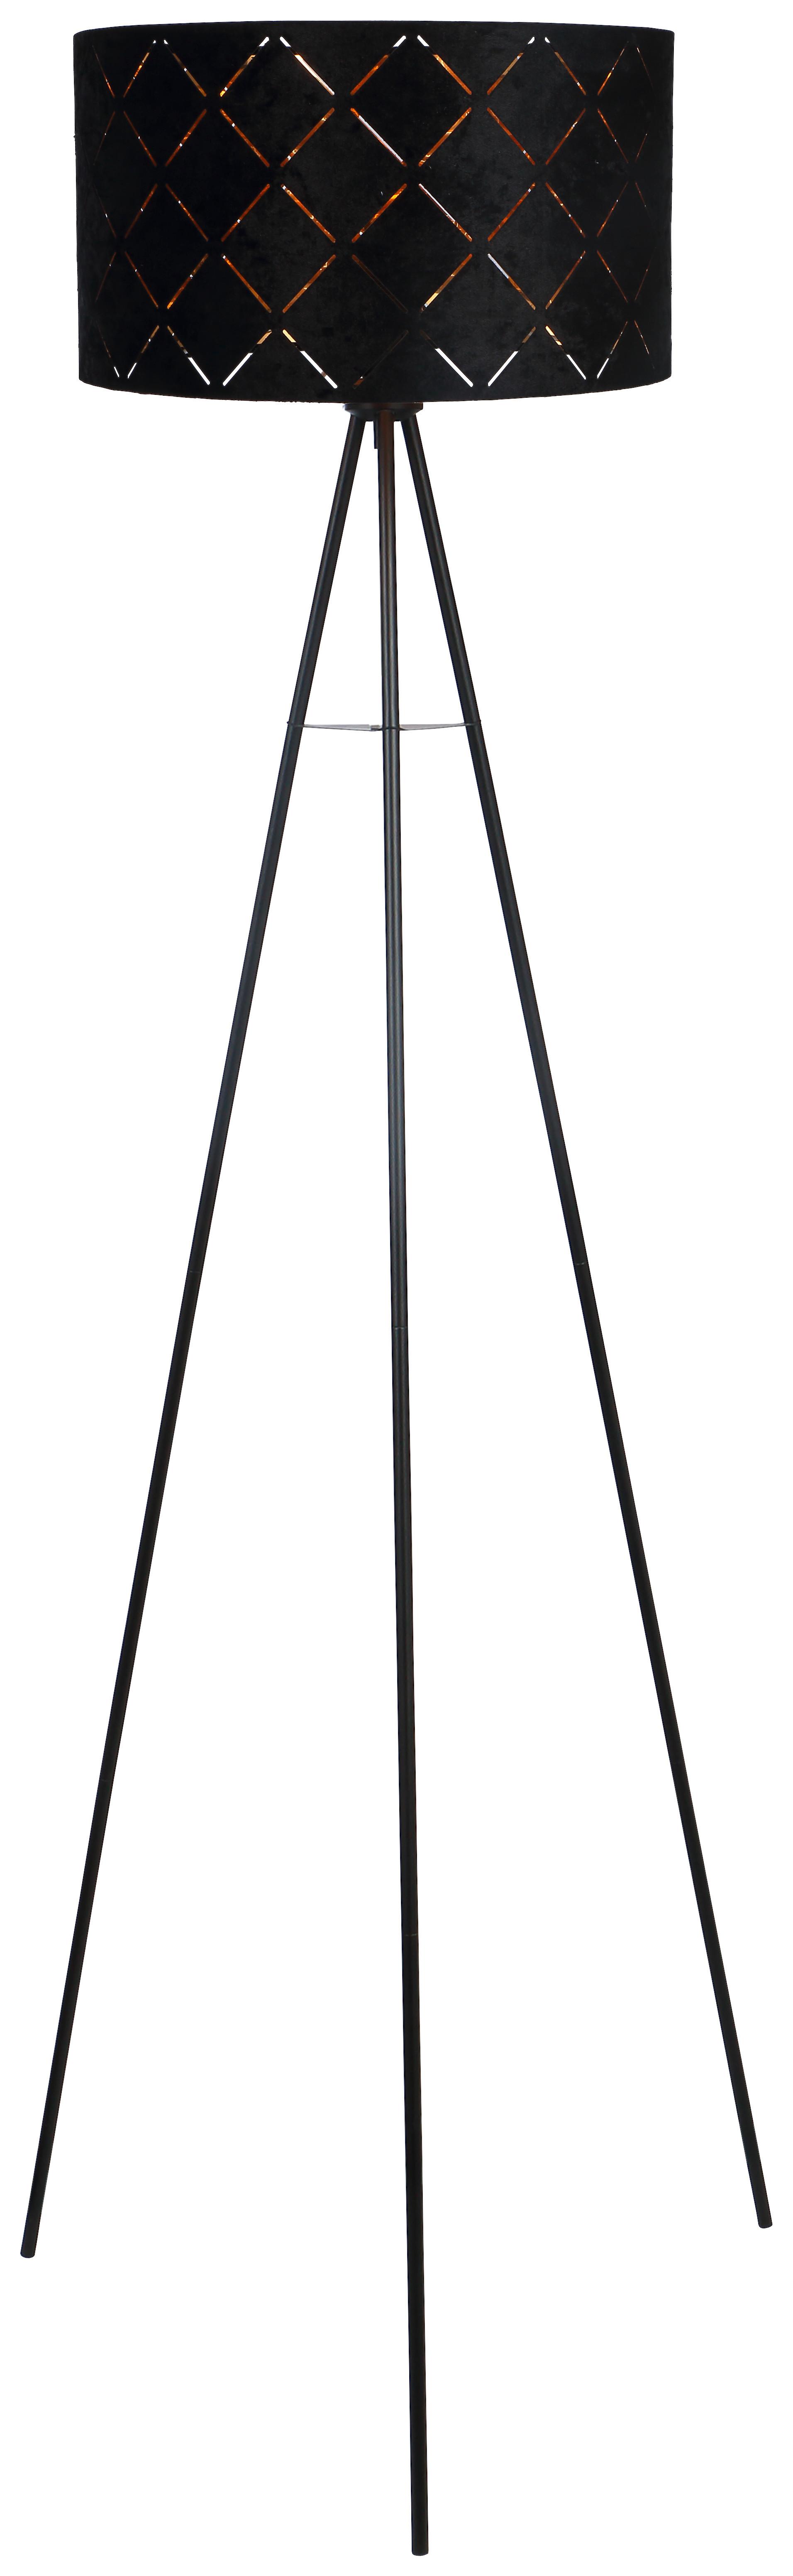 Stojacia Lampa Evelyn V: 149cm, 40 Watt - čierna, Štýlový, kov (149cm) - Modern Living